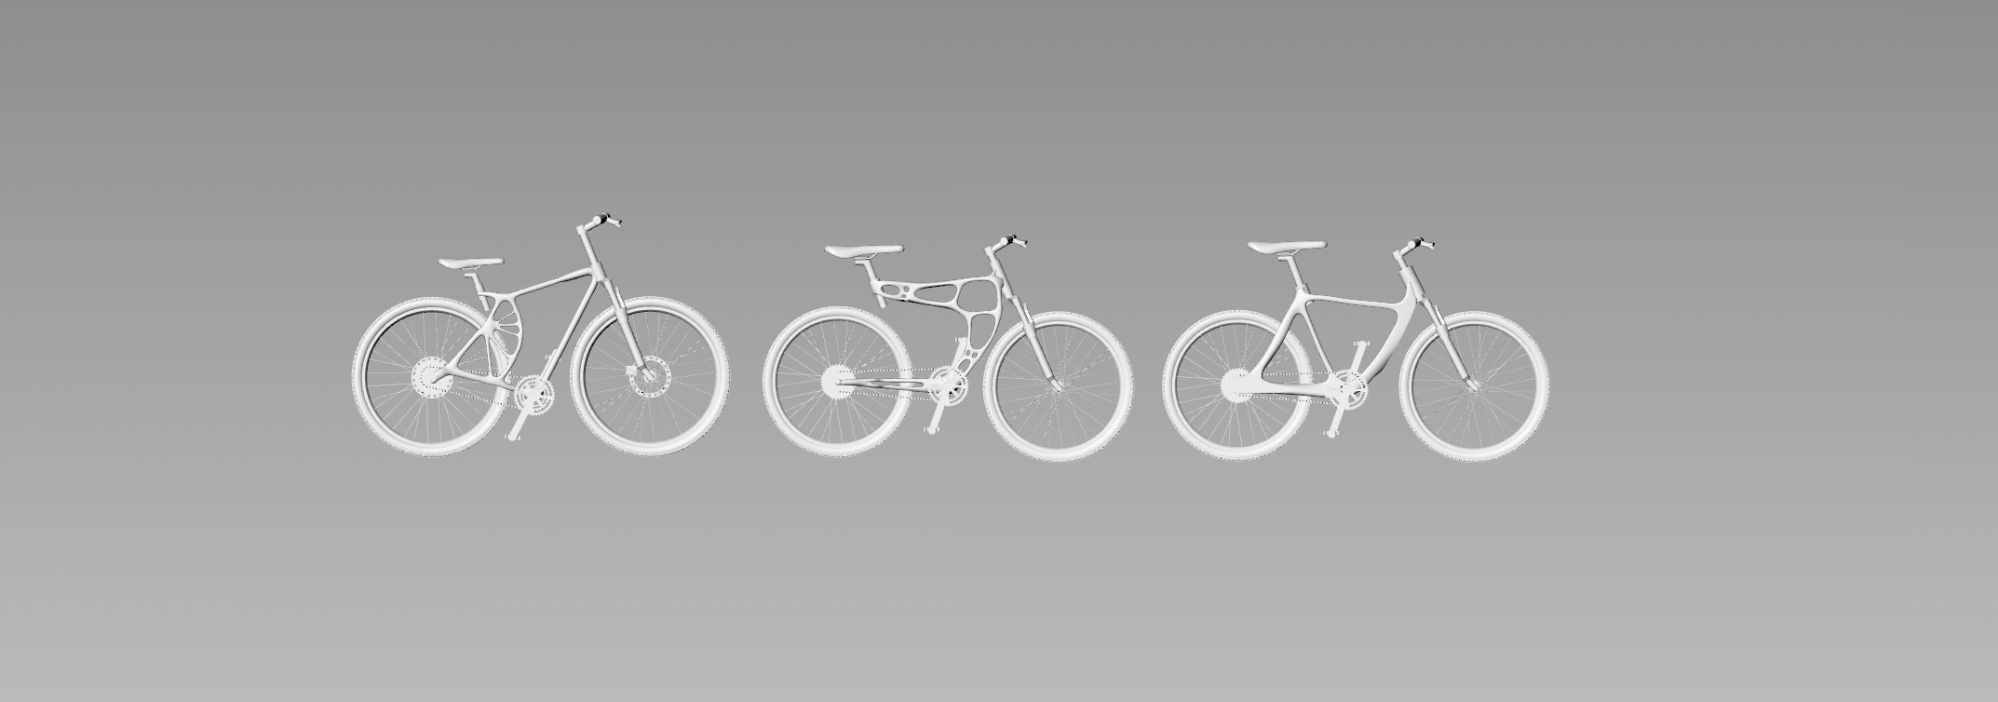 自行车架拓扑优化